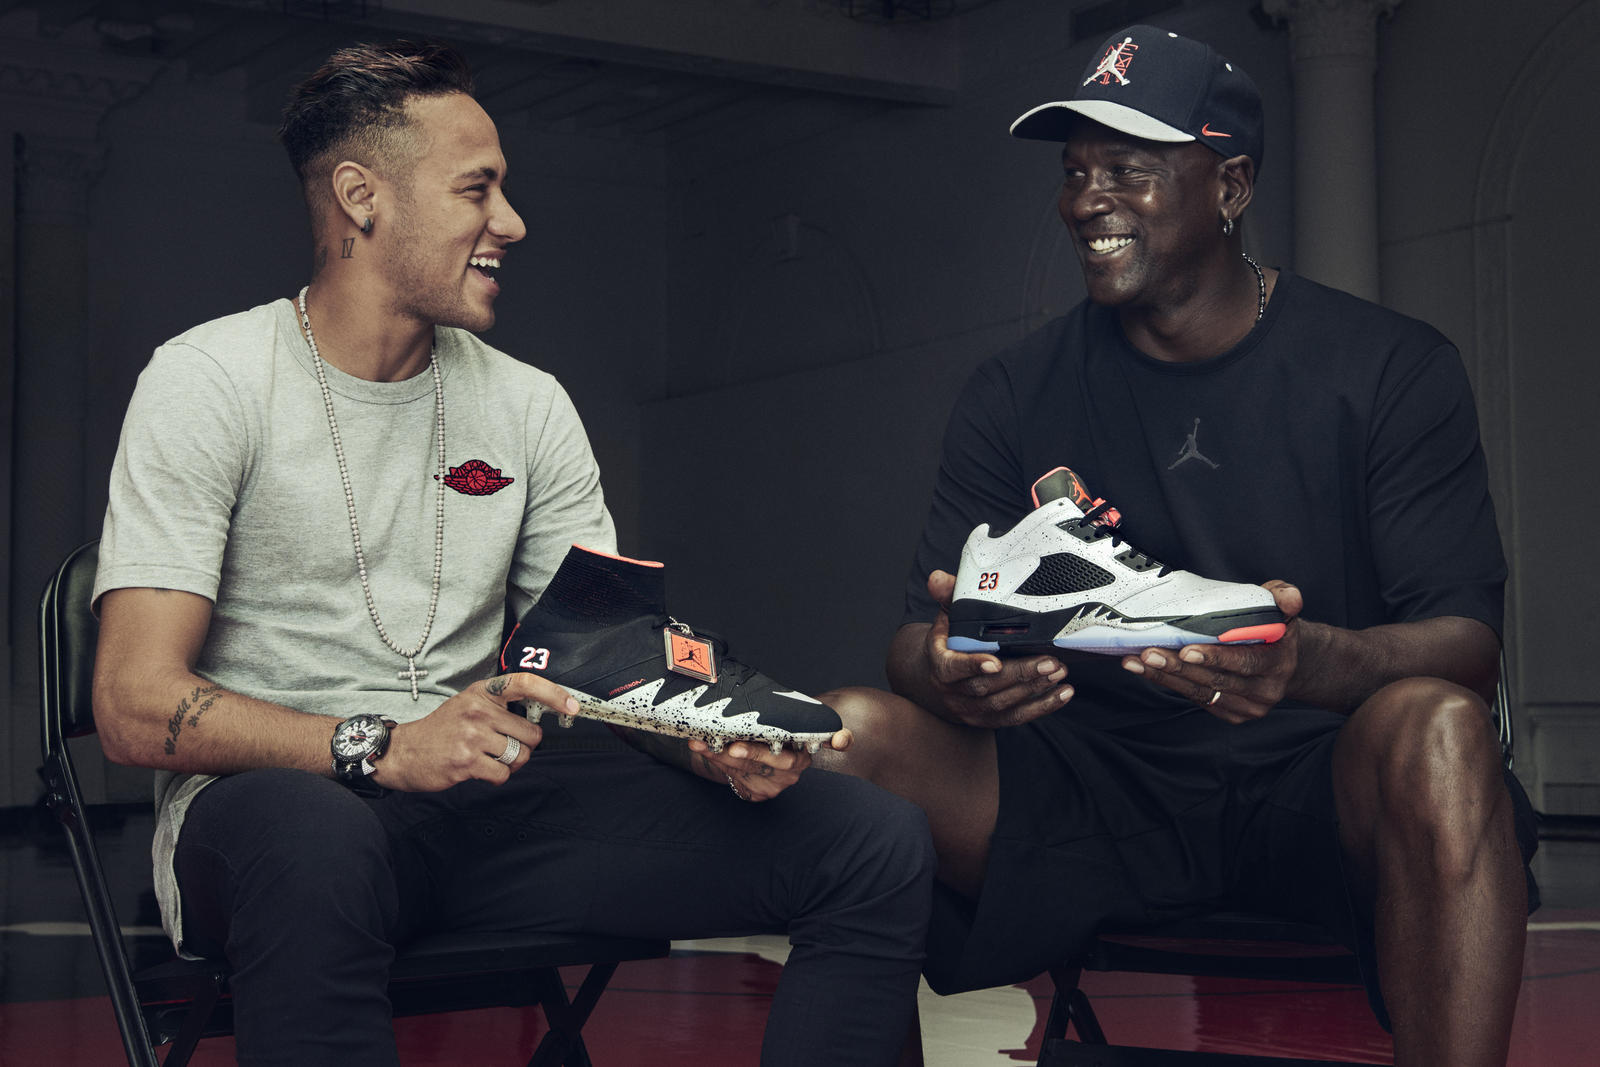 Nike Introduces the NJR x Jordan Collection | Kickspotting